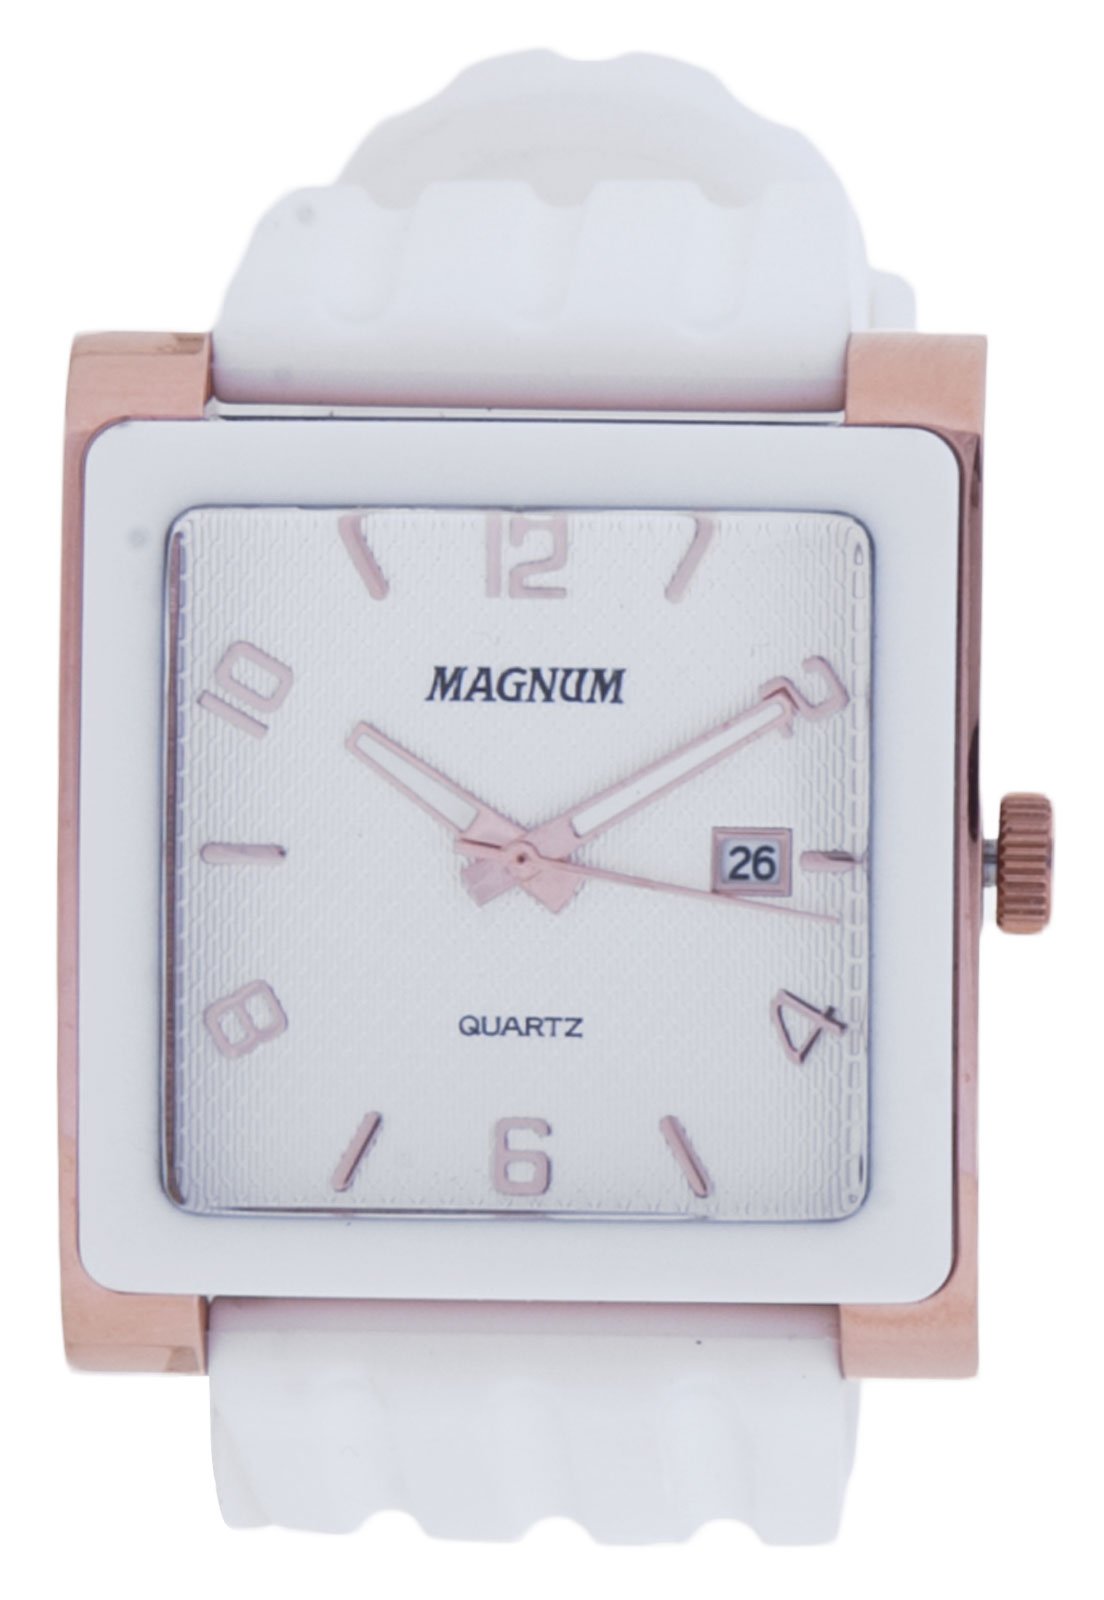 Relógio Feminino Magnum Analógico MA28832H - Dourado - Shoploko - Por você,  para você